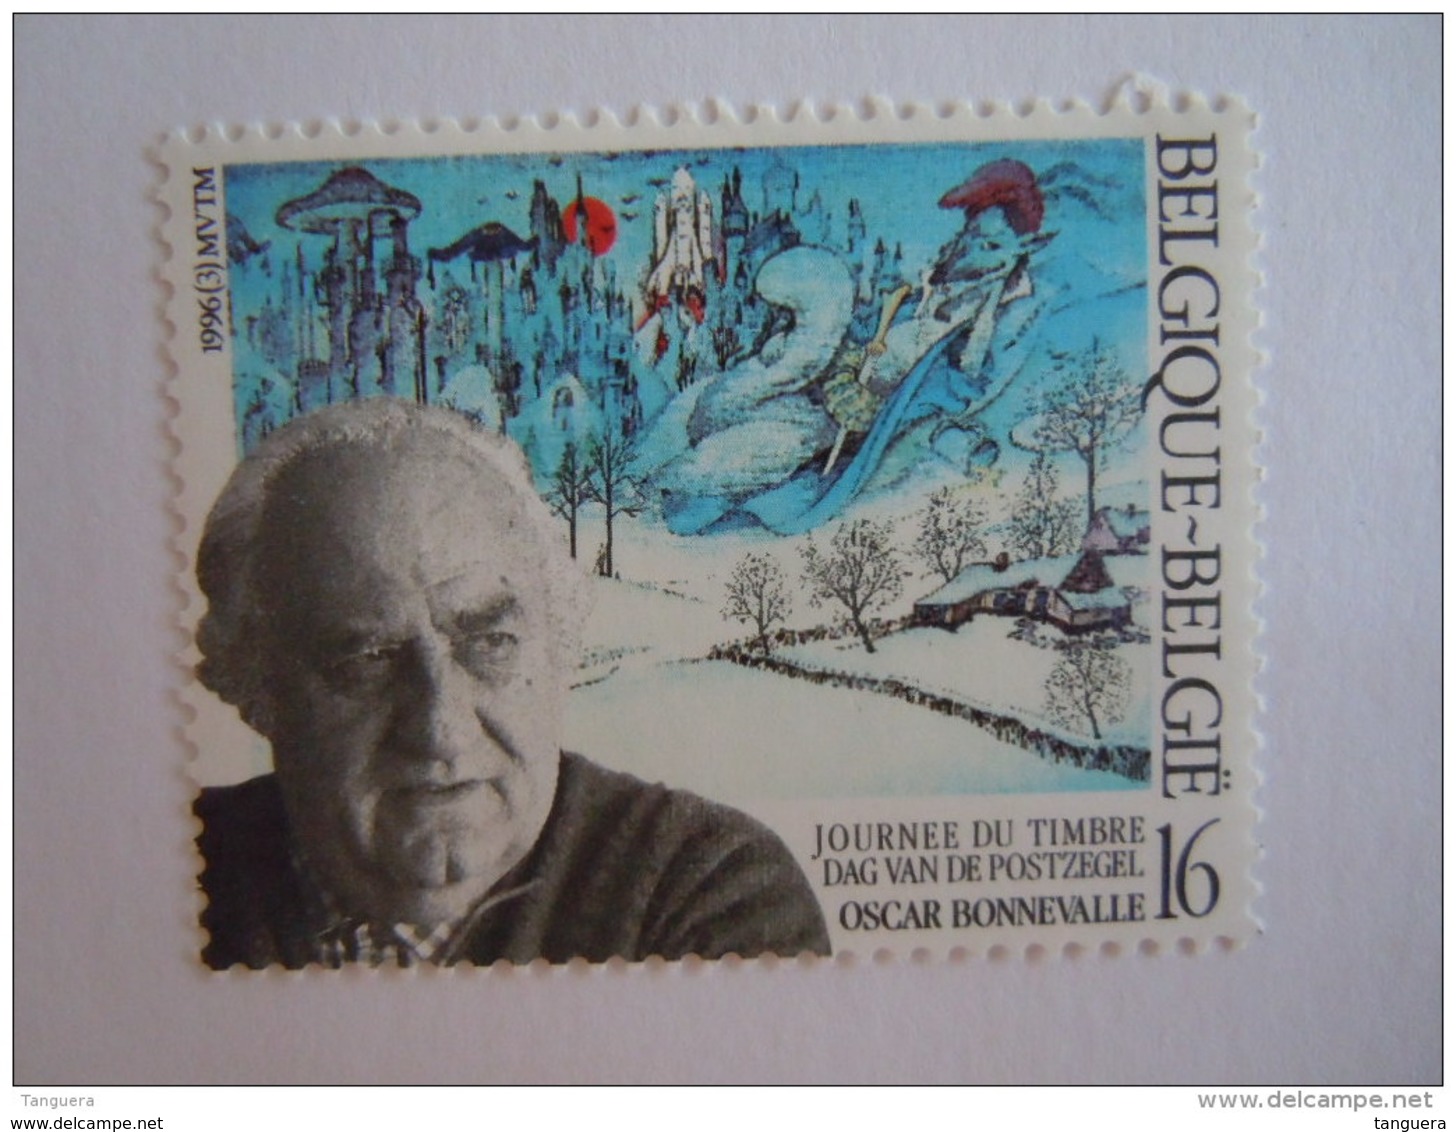 België Belgique 1996 Oscar Bonnevalle Dag Van De Postzegel Journée Du Timbre Cob 2629 MNH ** - Nuevos